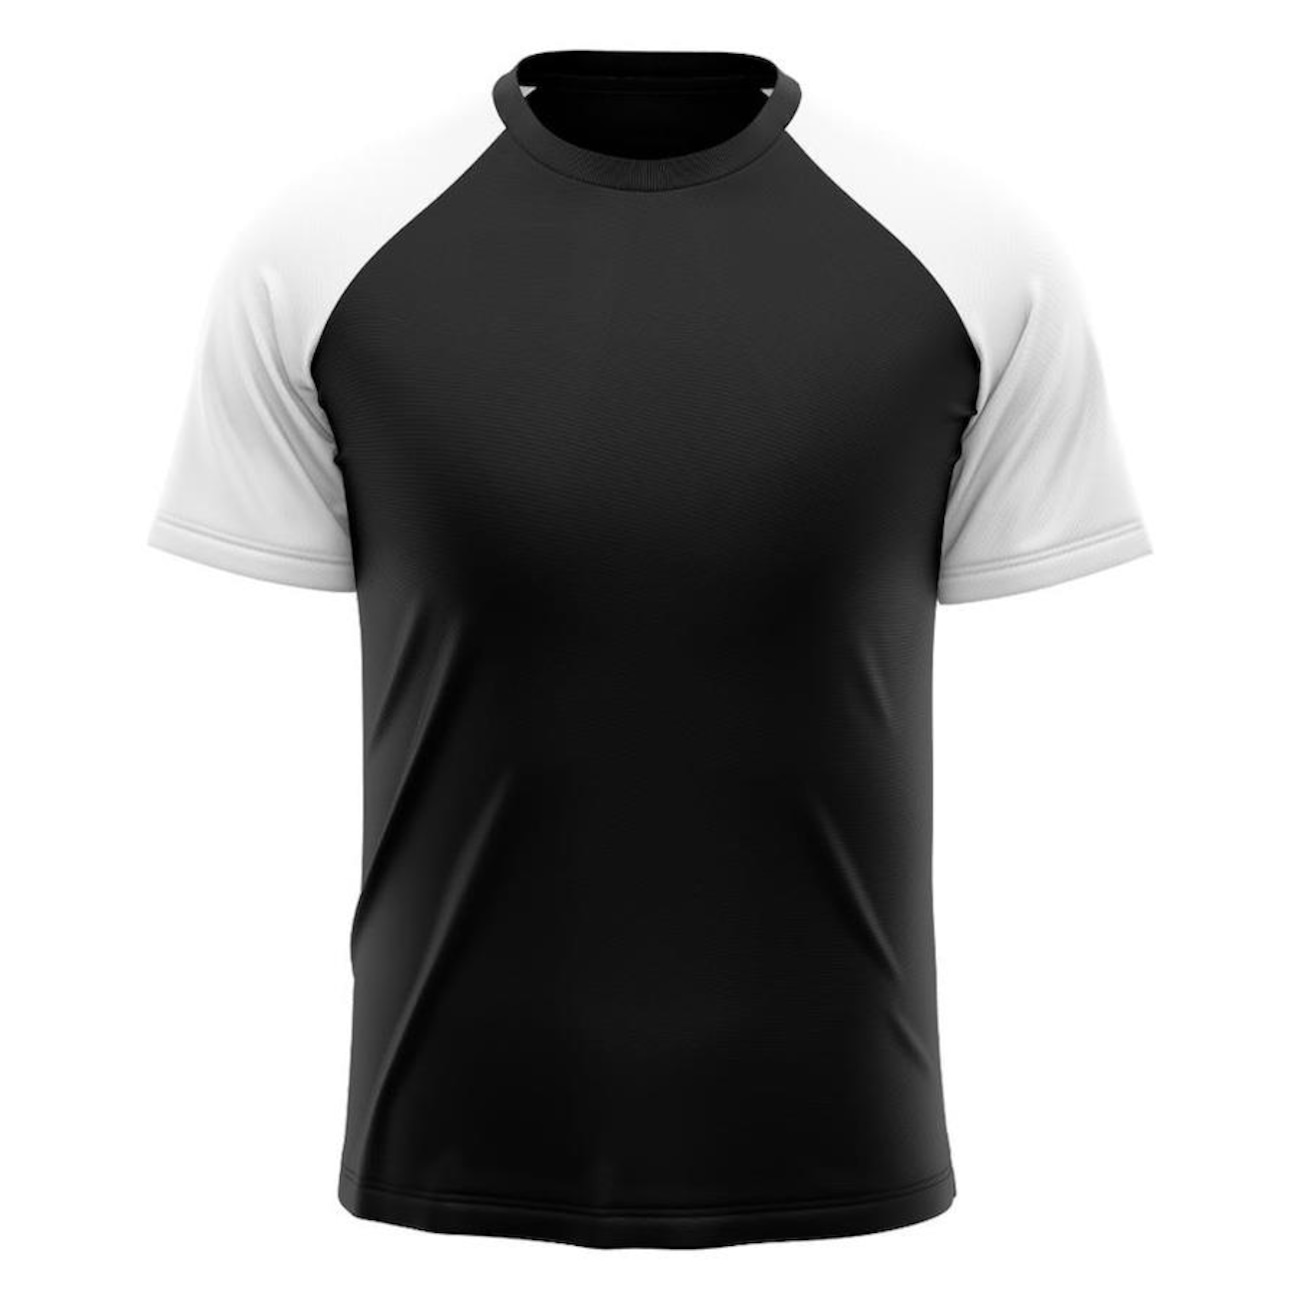 Camiseta Whats Wear Raglan Dry Fit com Proteção Solar UV - Masculina